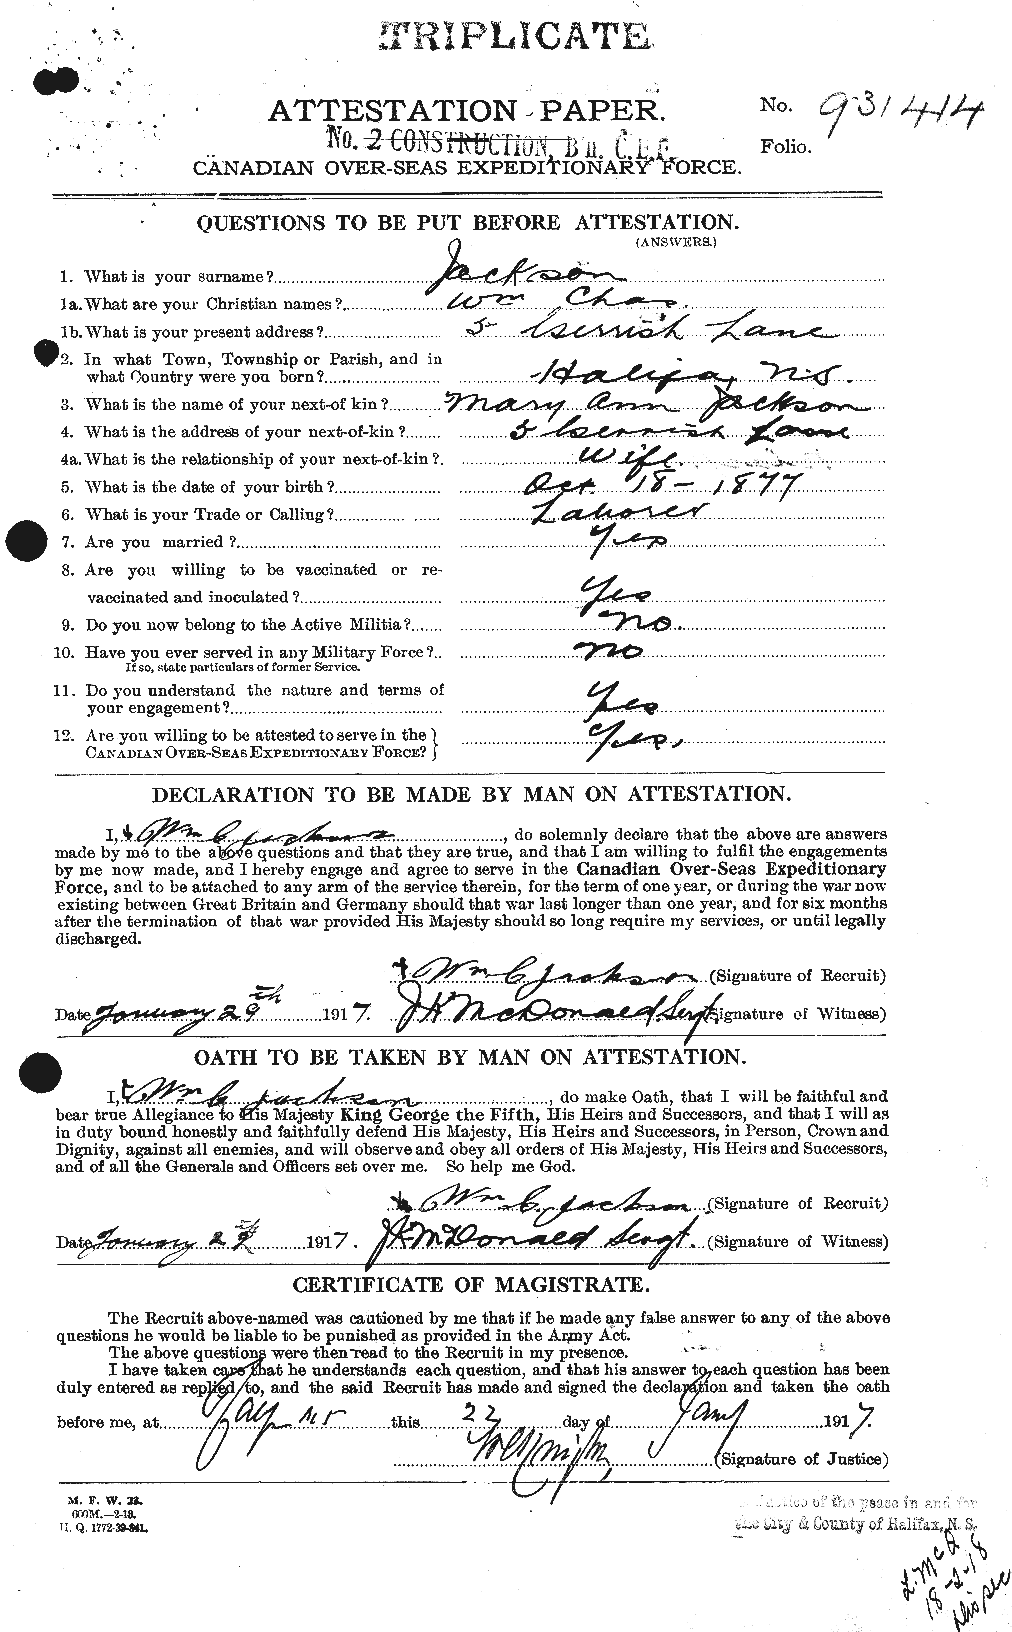 Dossiers du Personnel de la Première Guerre mondiale - CEC 412991a